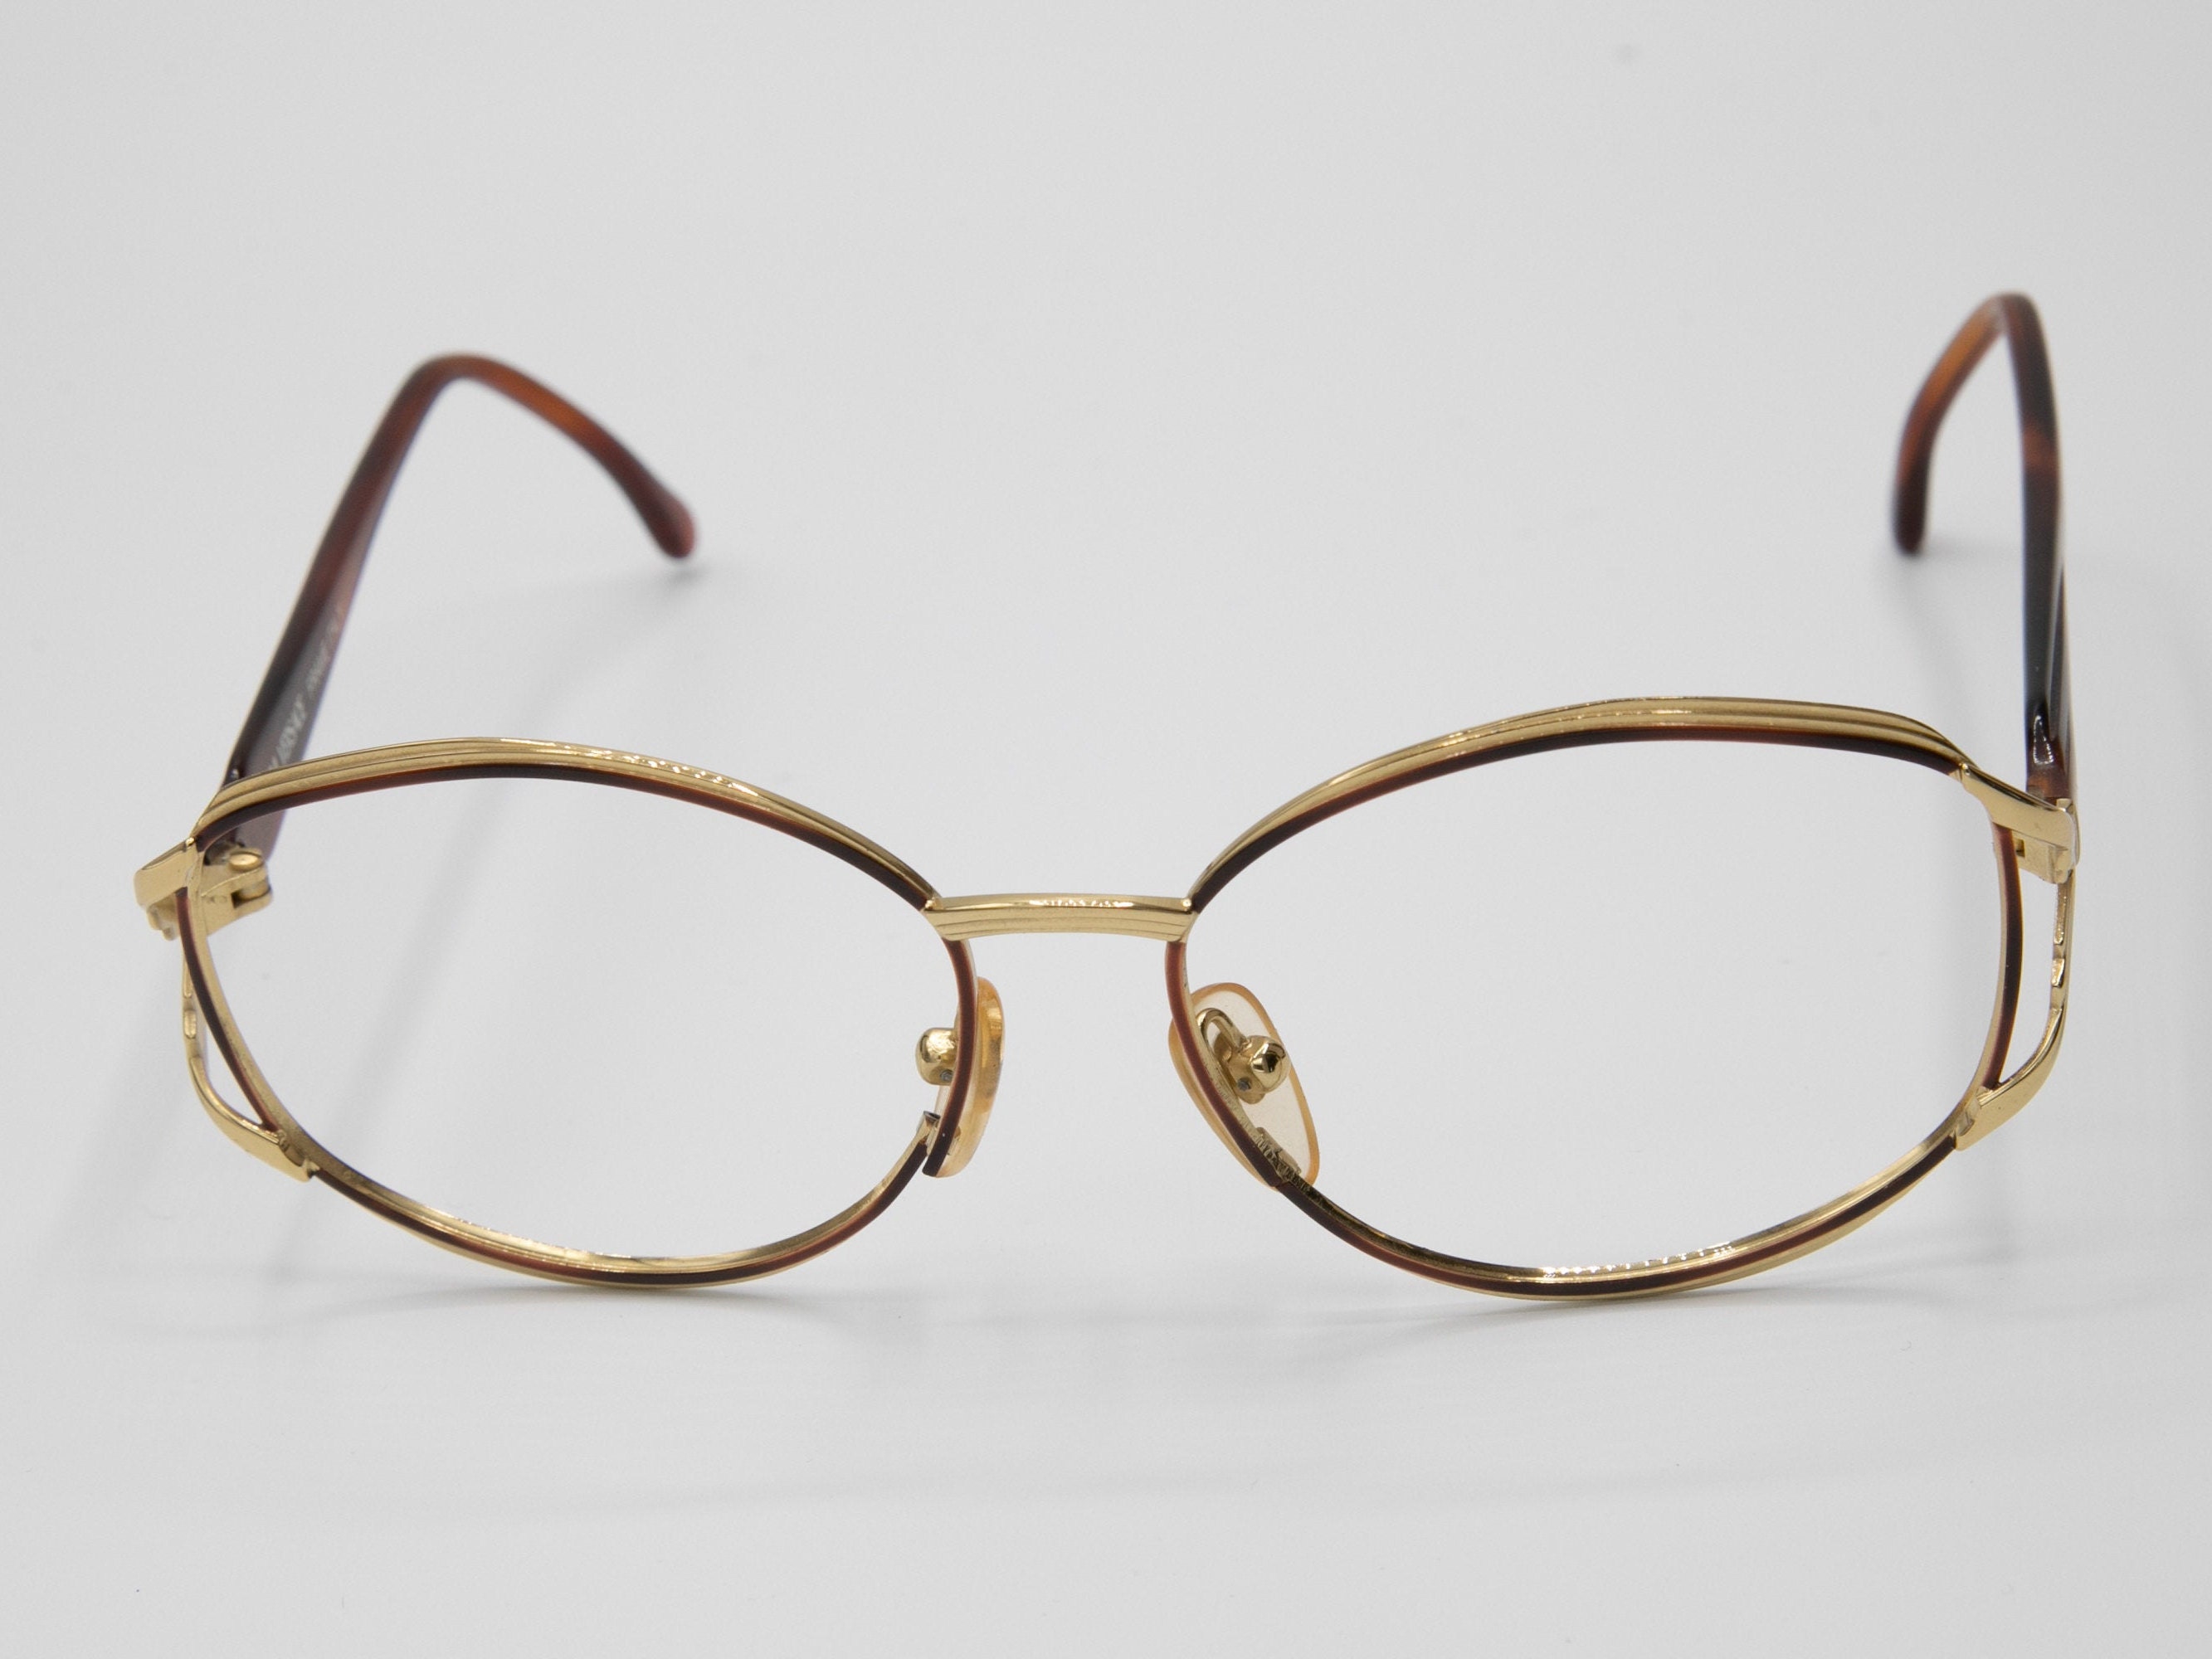 Versace 1980s Women's Eyeglasses Vintage Oval Gold Metal Frame V24 - Etsy